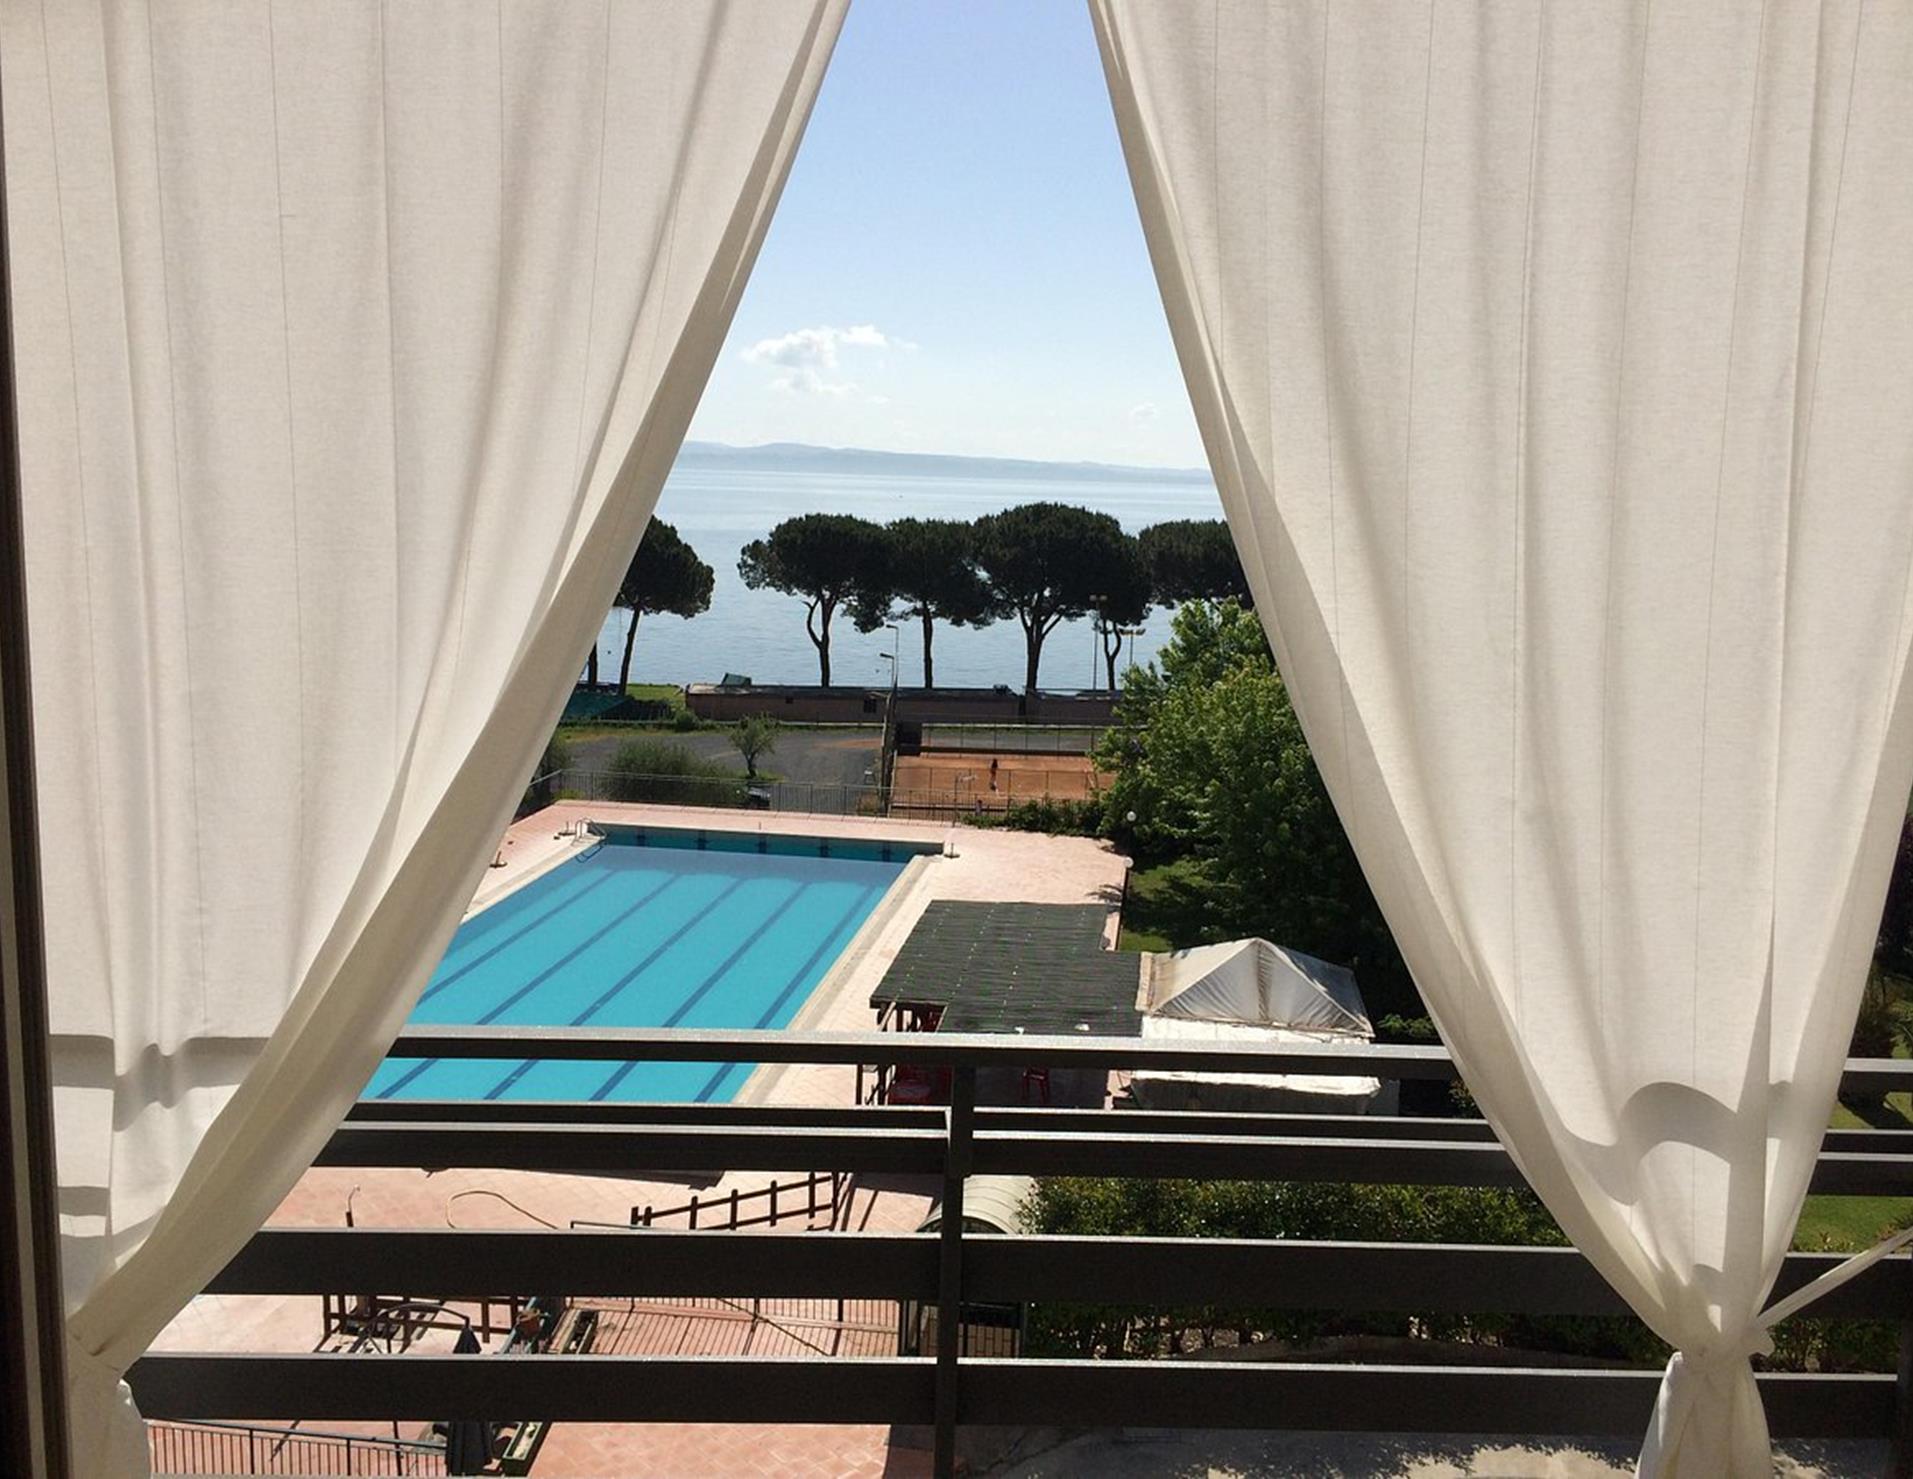 LH Hotel del Lago Bracciano - Room View